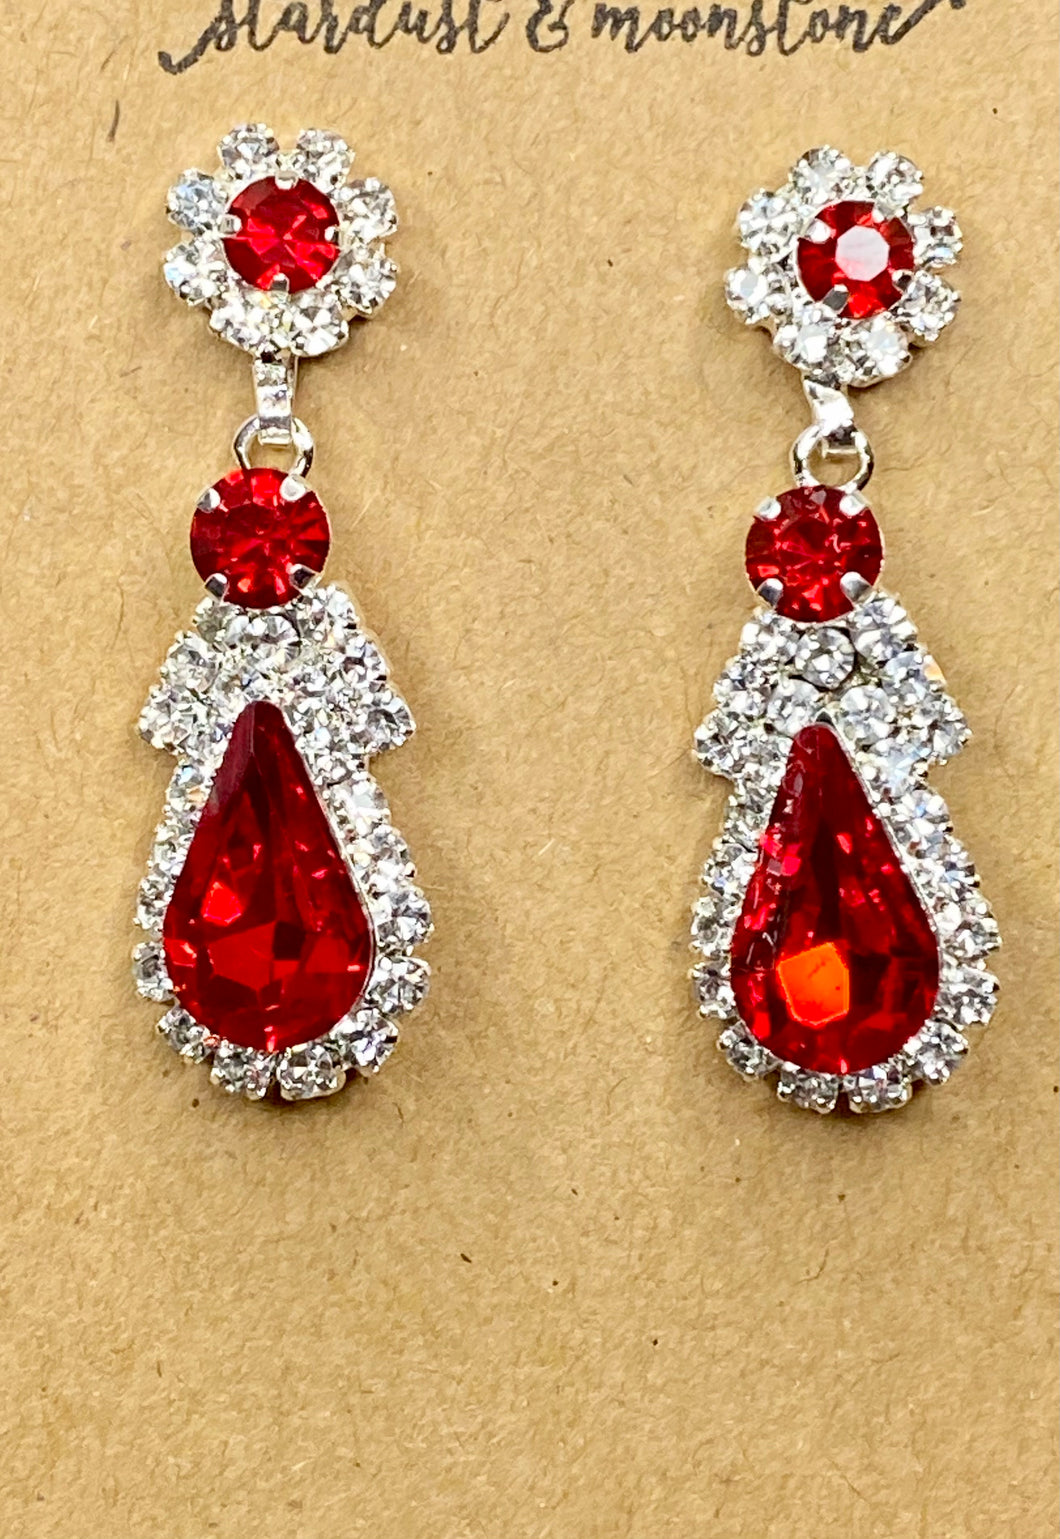 Red Crystal Teardrop & Rhinestone Earrings - Stardust & Moonstone